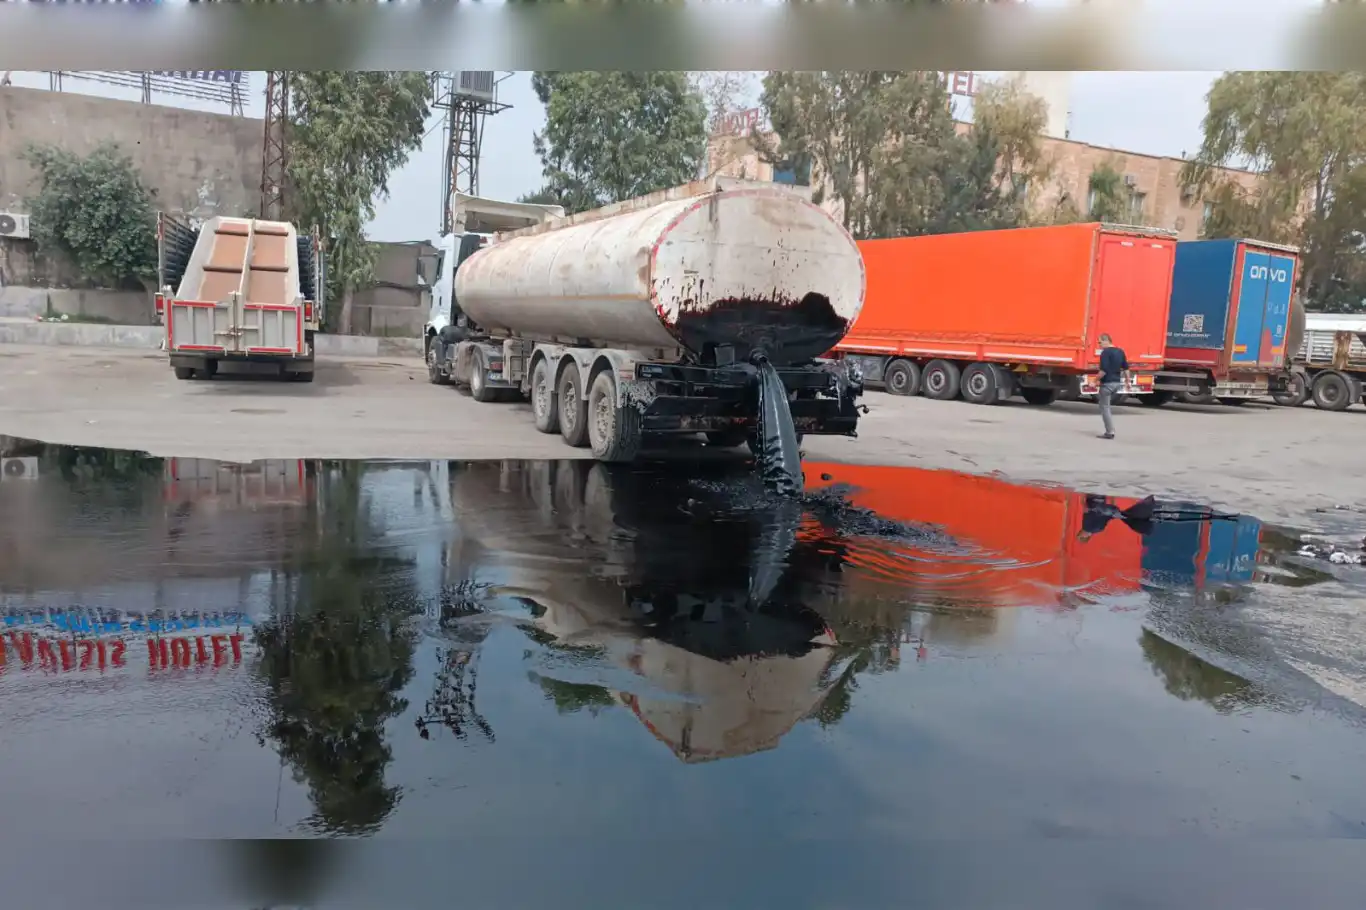 Mardin’de kazaya karışan tankerden 26 ton fiorin yağı yola savruldu 